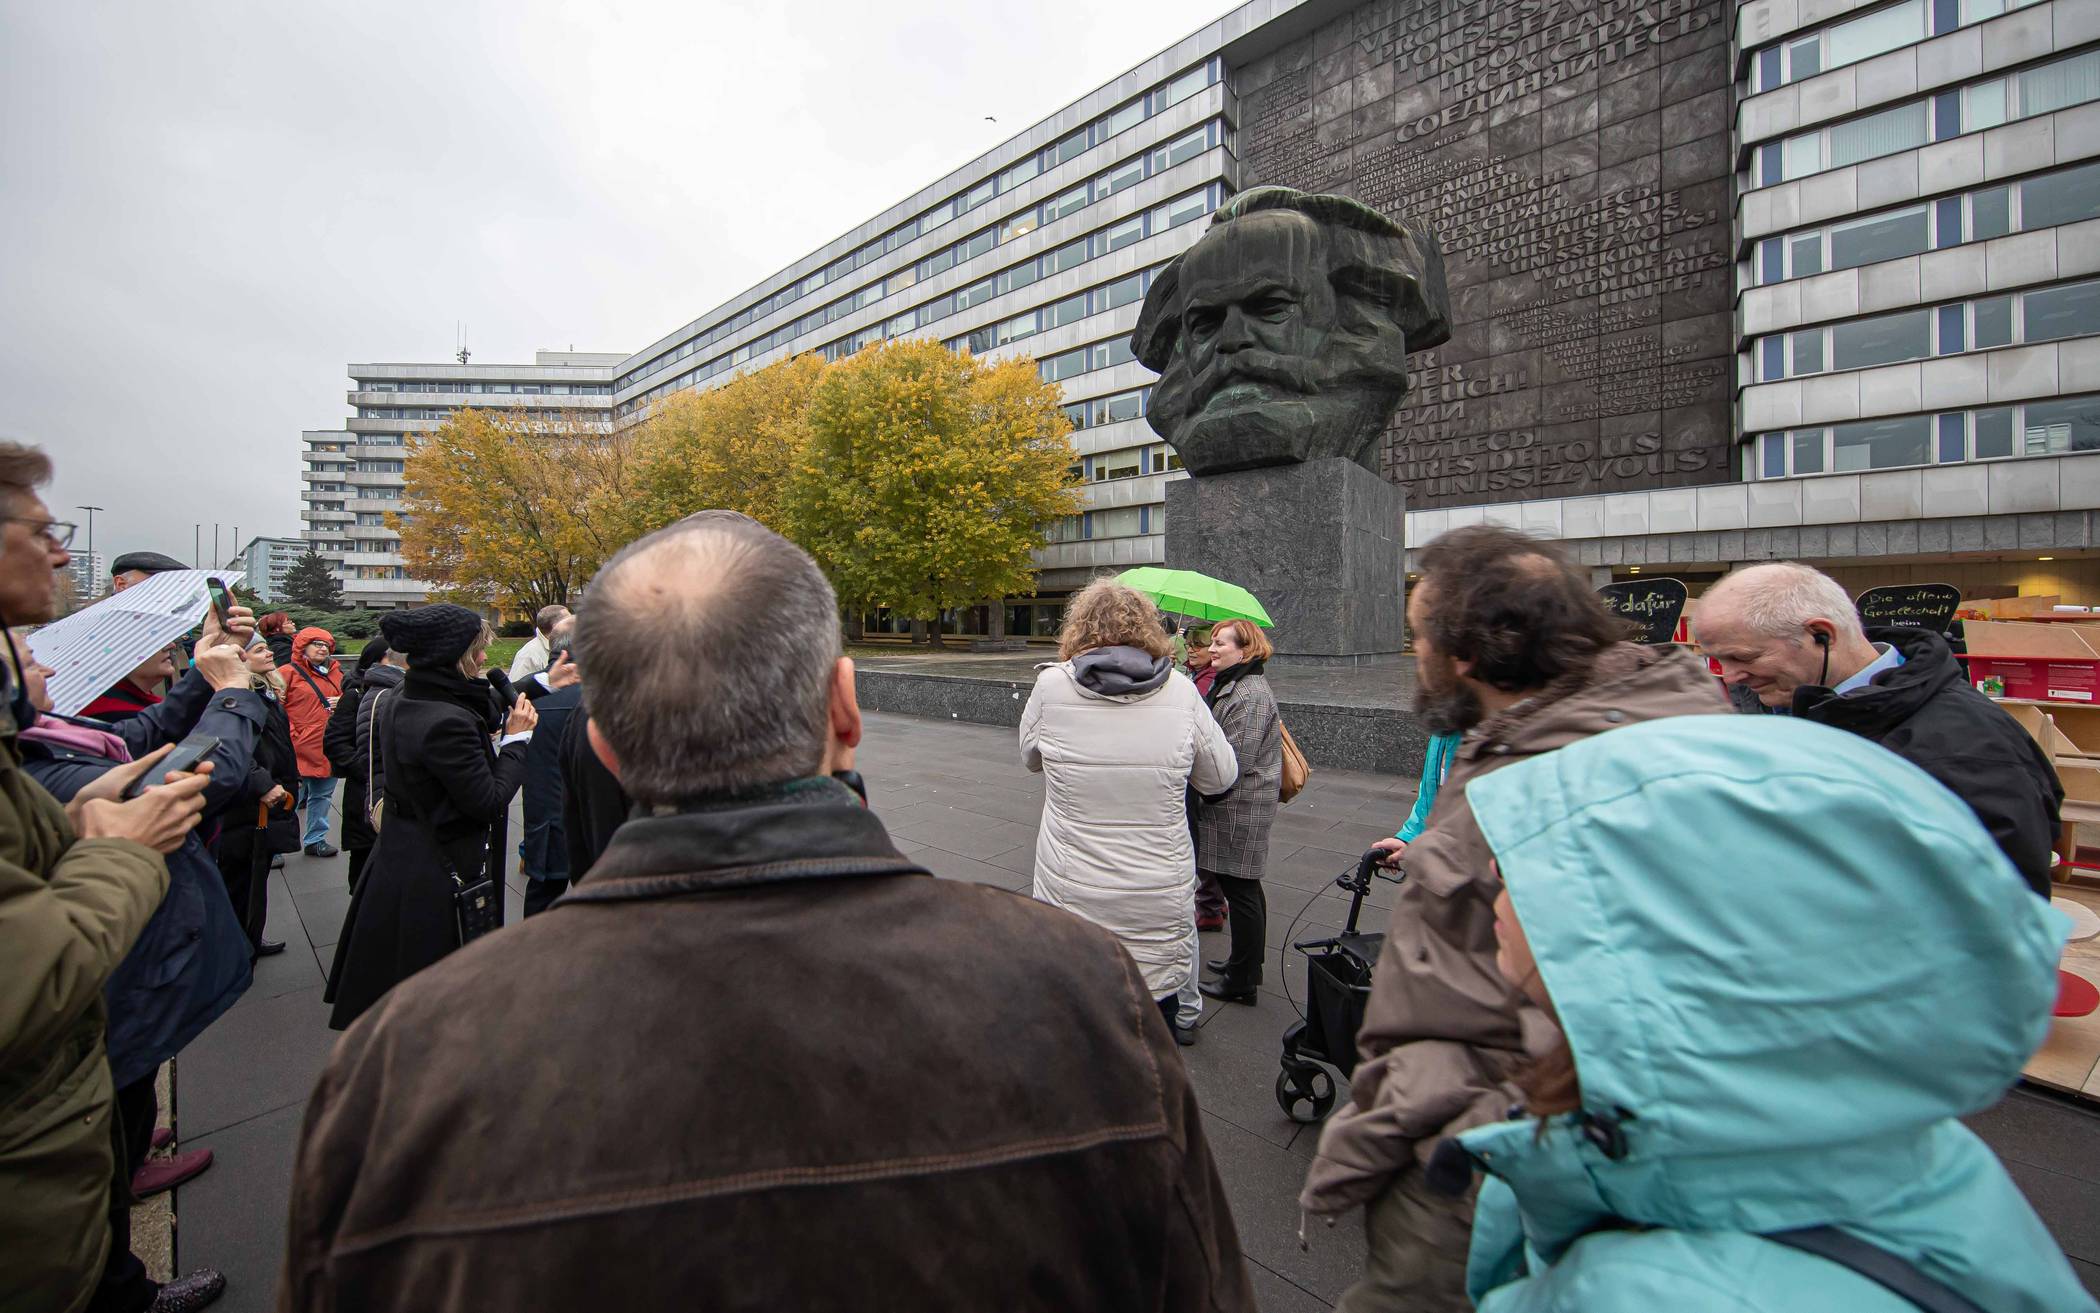  Düsseldorfer am „Nischel“, dem Karl Marx-Denkmal in Chemnitz. 